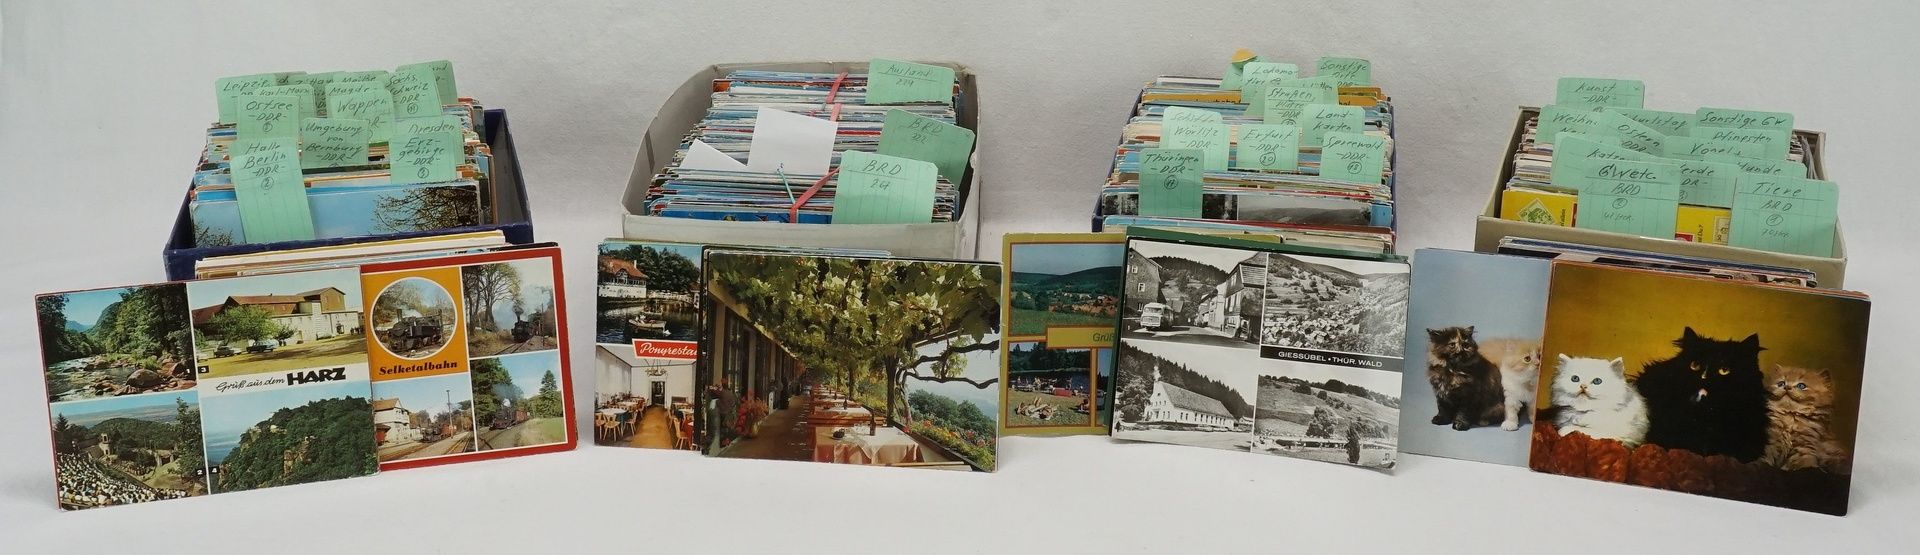 Große Ansichtskarten-Sammlung (2716 Postkarten)nach 1945 bis ca. 1980, davon 1791 Stück DDR, 701